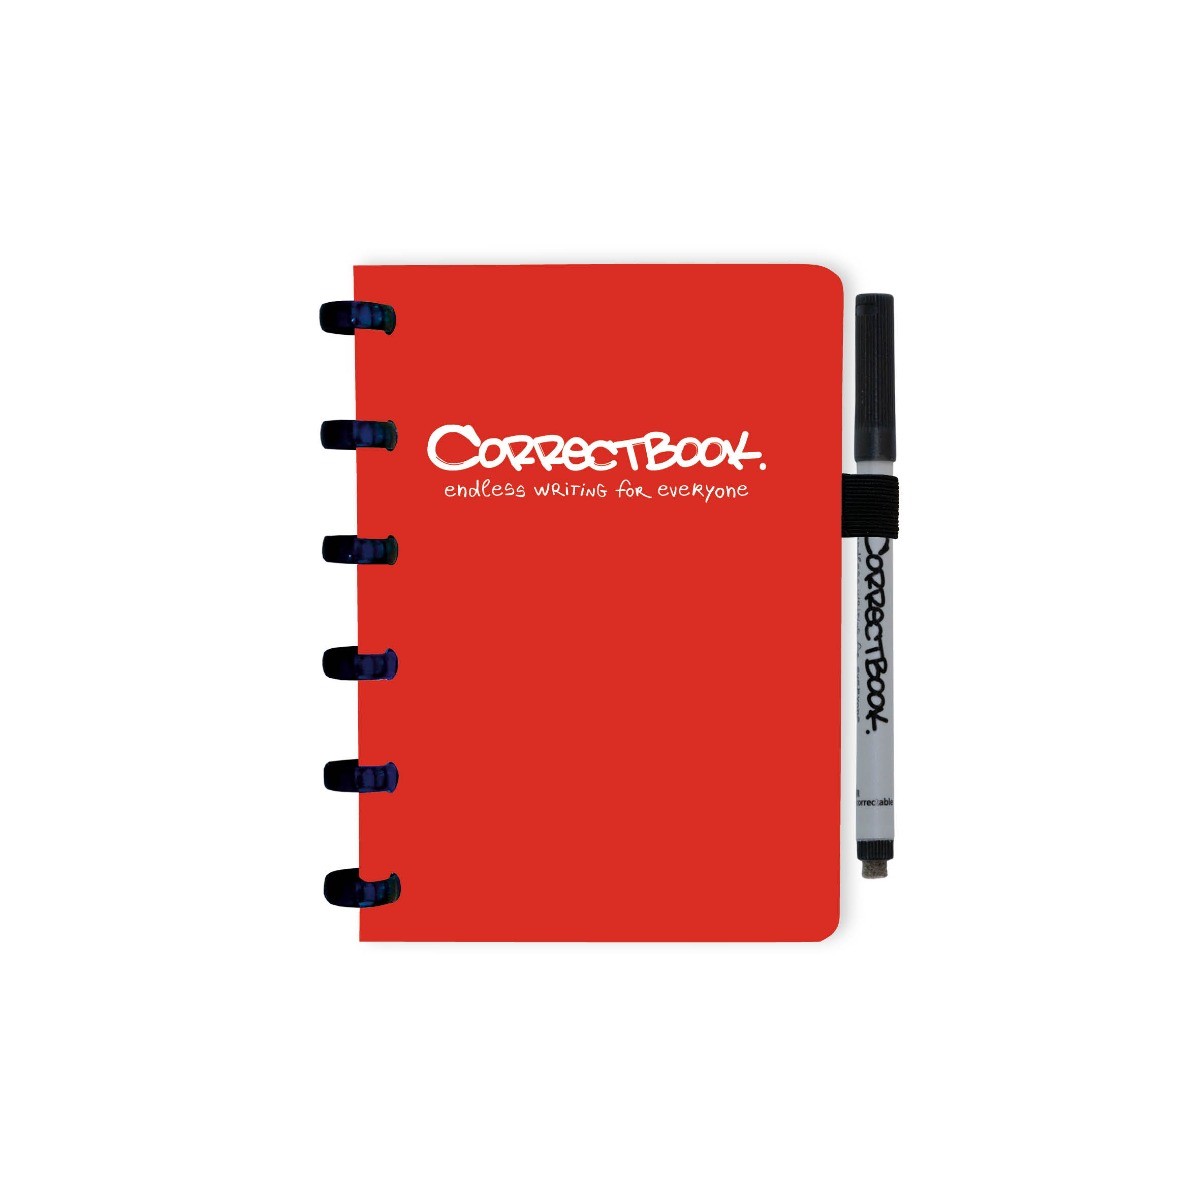 Correctbook Original Horizon Red A6-Gelinieerd - Uitwisbaar / Herschrijfbaar Notitieboek